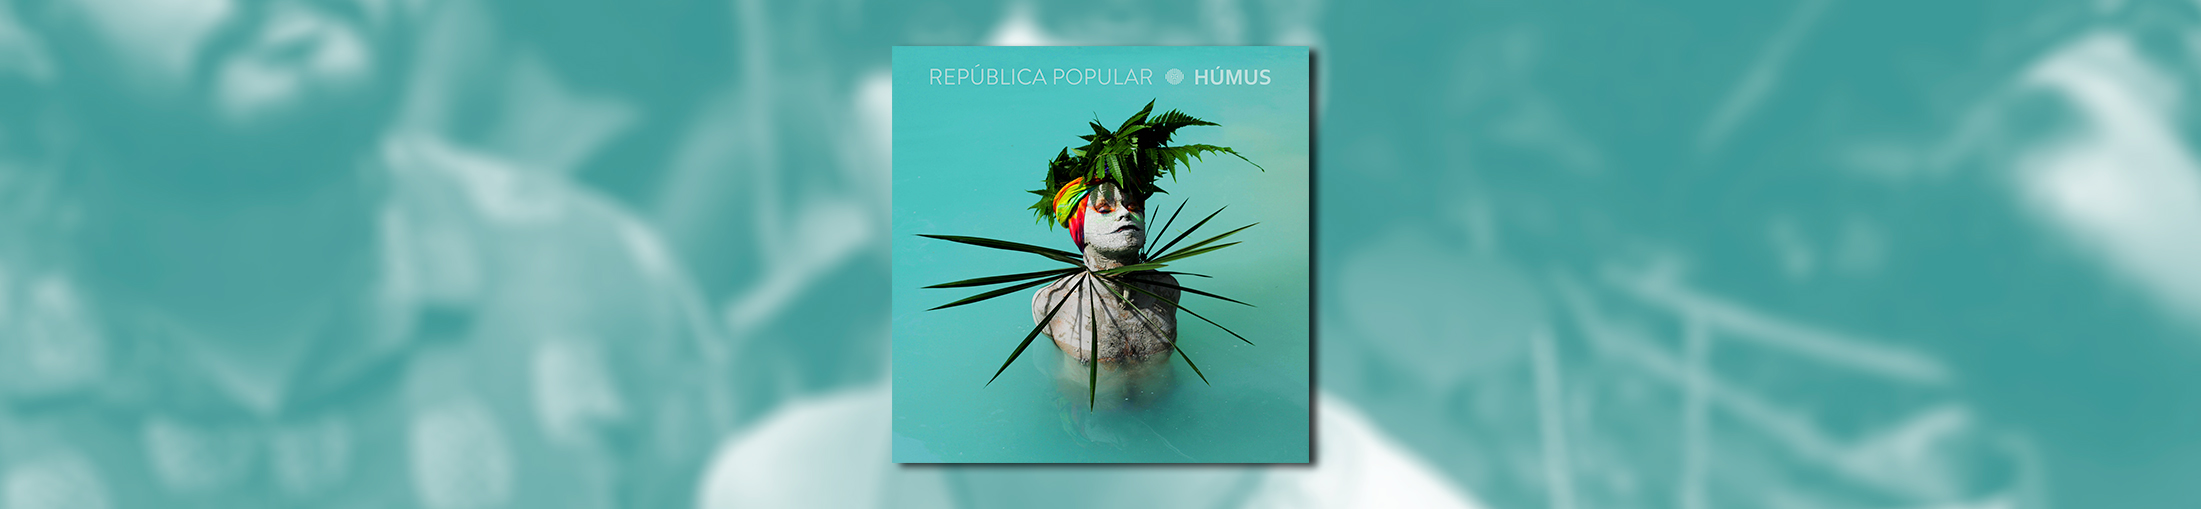 República Popular lança álbum visual “Húmus” em uma verdadeira carta de amor a Manaus